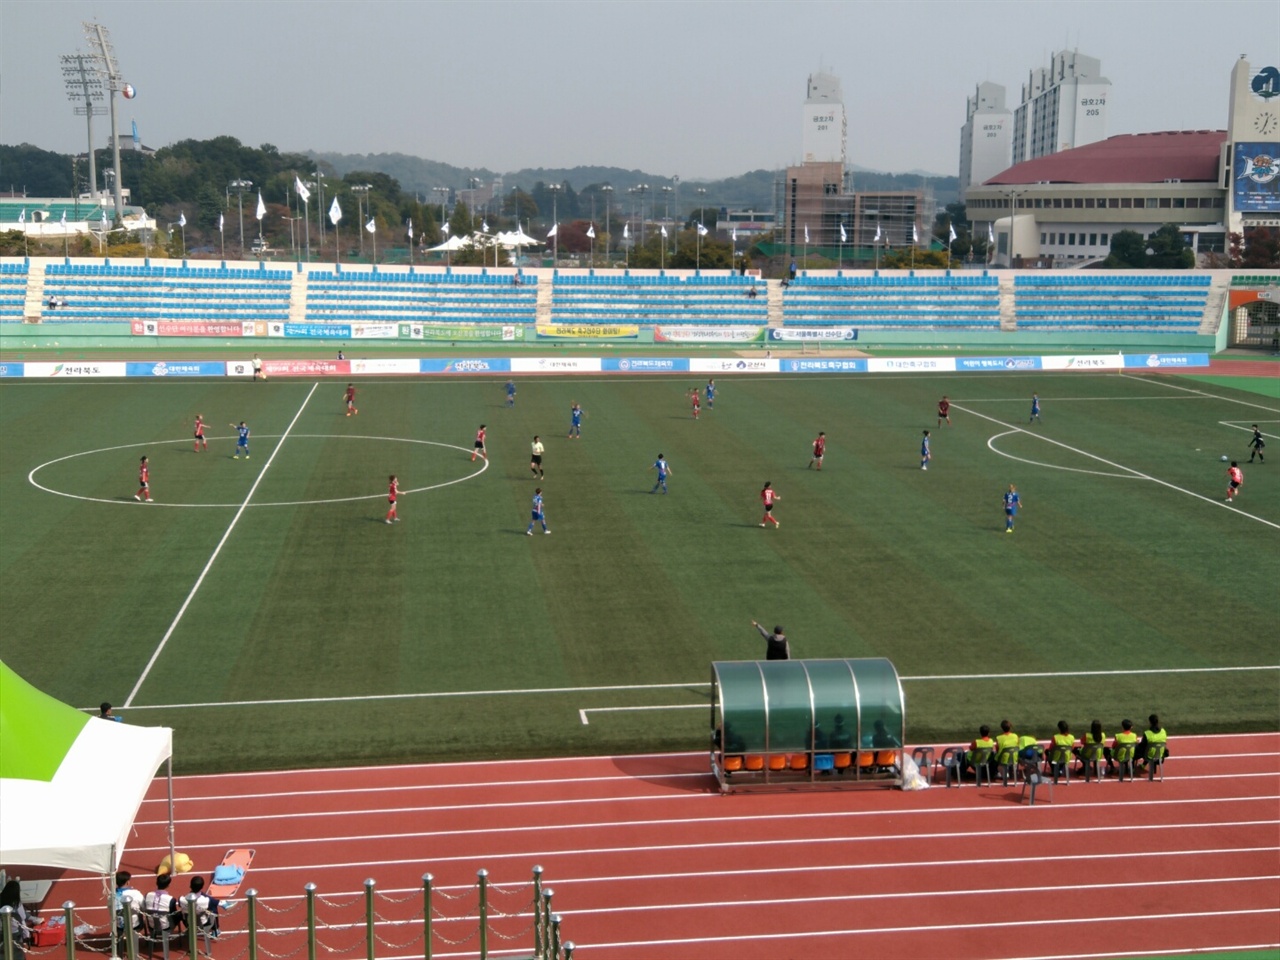  인천현대제철(푸른색 유니폼)과 수원도시공사의 4강전 경기 모습